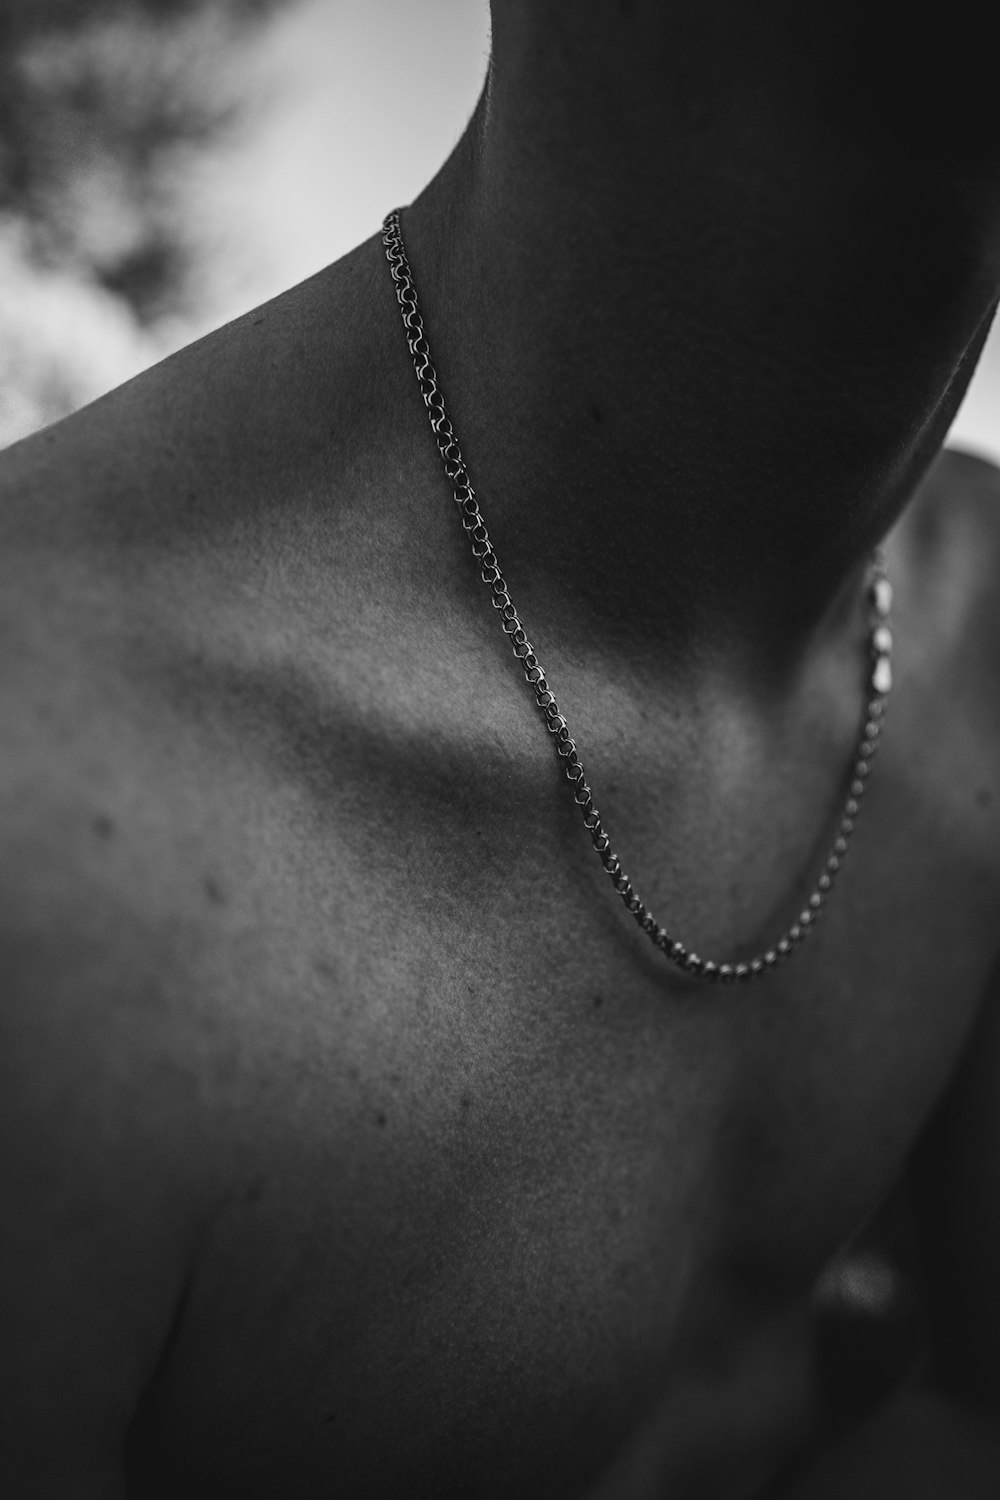 Photographie en noir et blanc d’un homme portant un collier en chaîne